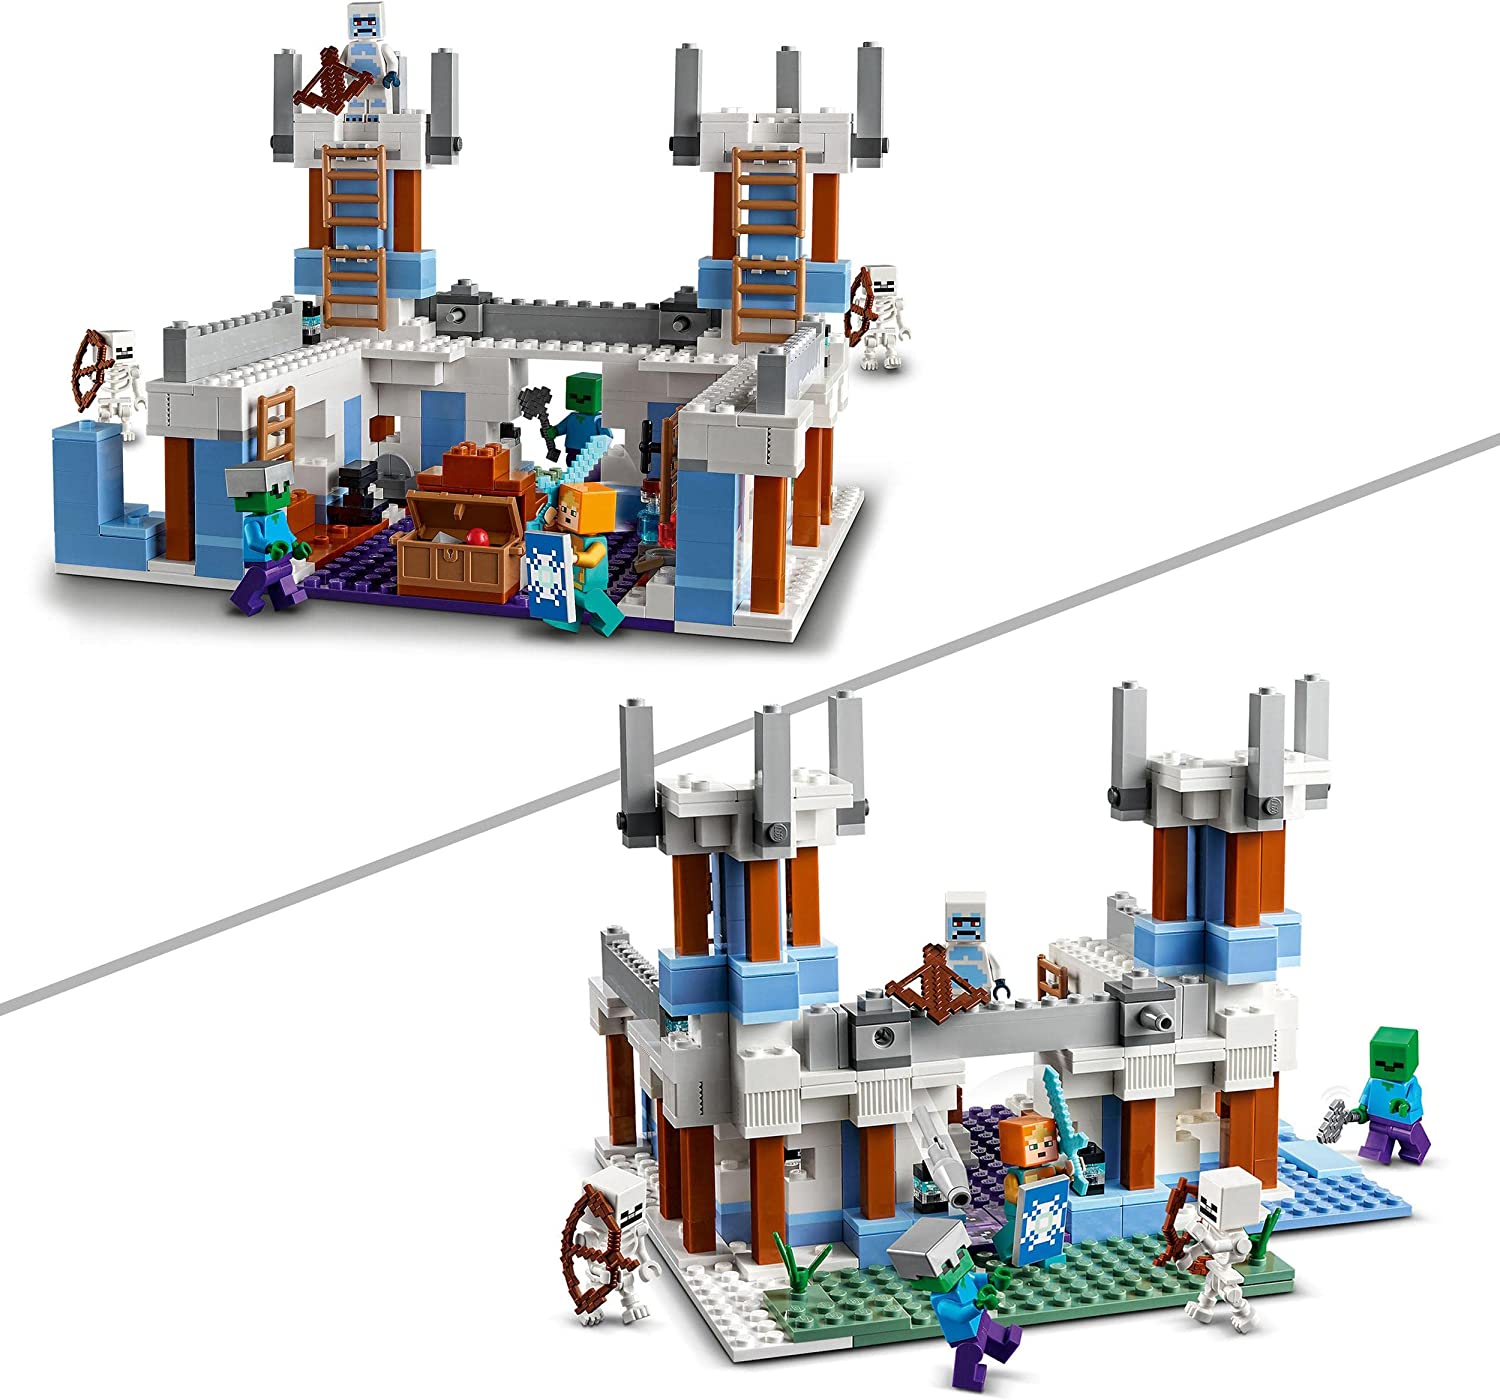 LEGO 21186 Minecraft Isslottet Byggleksaker, Leksaksslott, Modulärt Byggset, Presentidé med Minifigurer, Leksaker för Barn från 8 år